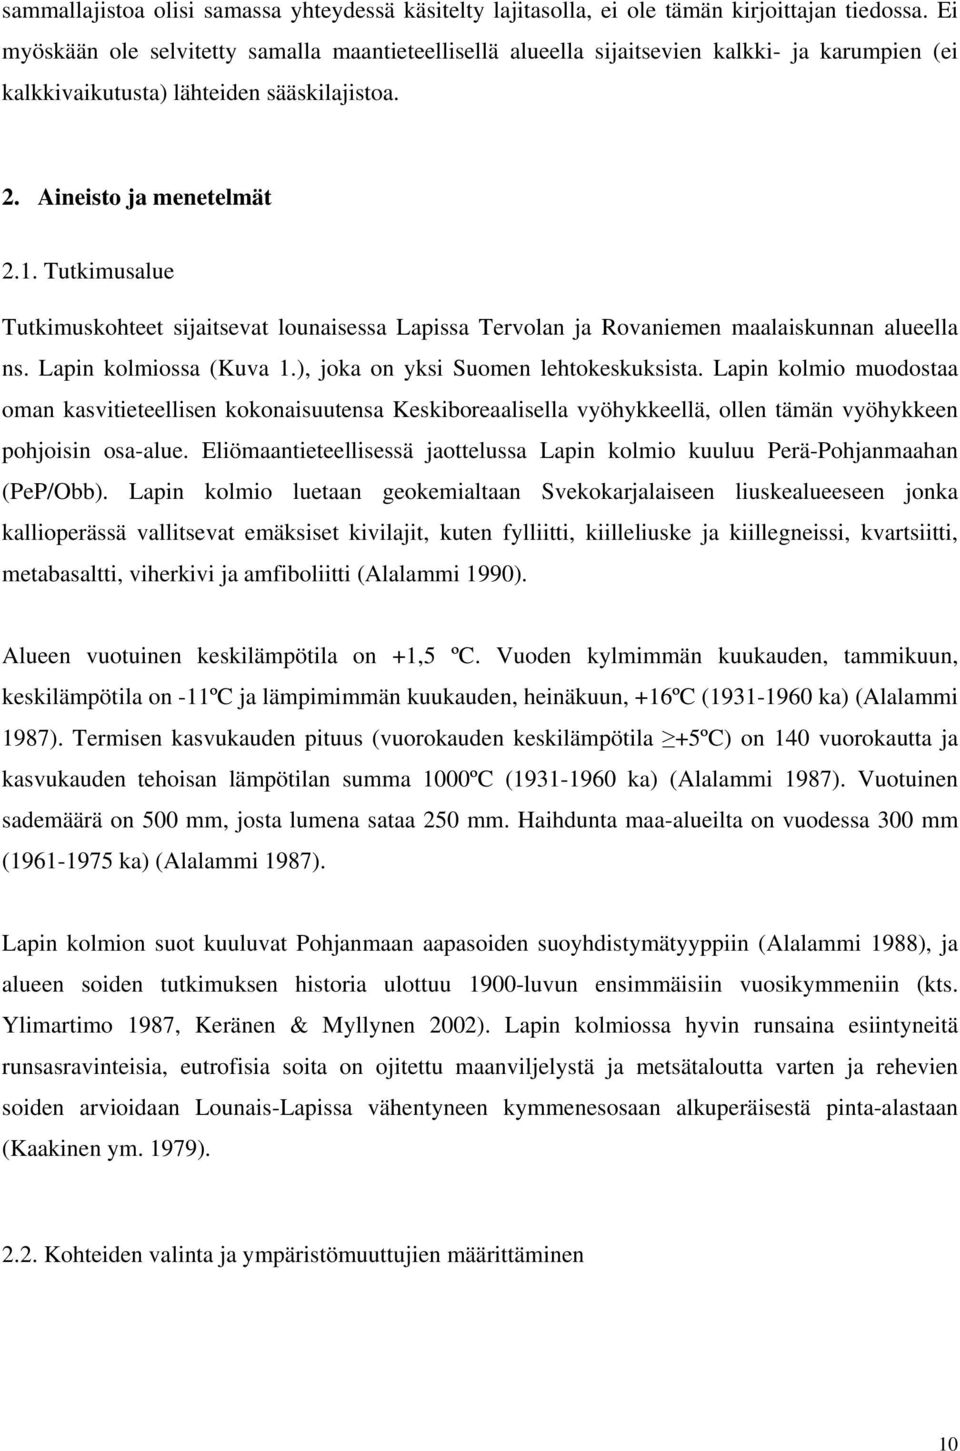 Tutkimusalue Tutkimuskohteet sijaitsevat lounaisessa Lapissa Tervolan ja Rovaniemen maalaiskunnan alueella ns. Lapin kolmiossa (Kuva 1.), joka on yksi Suomen lehtokeskuksista.